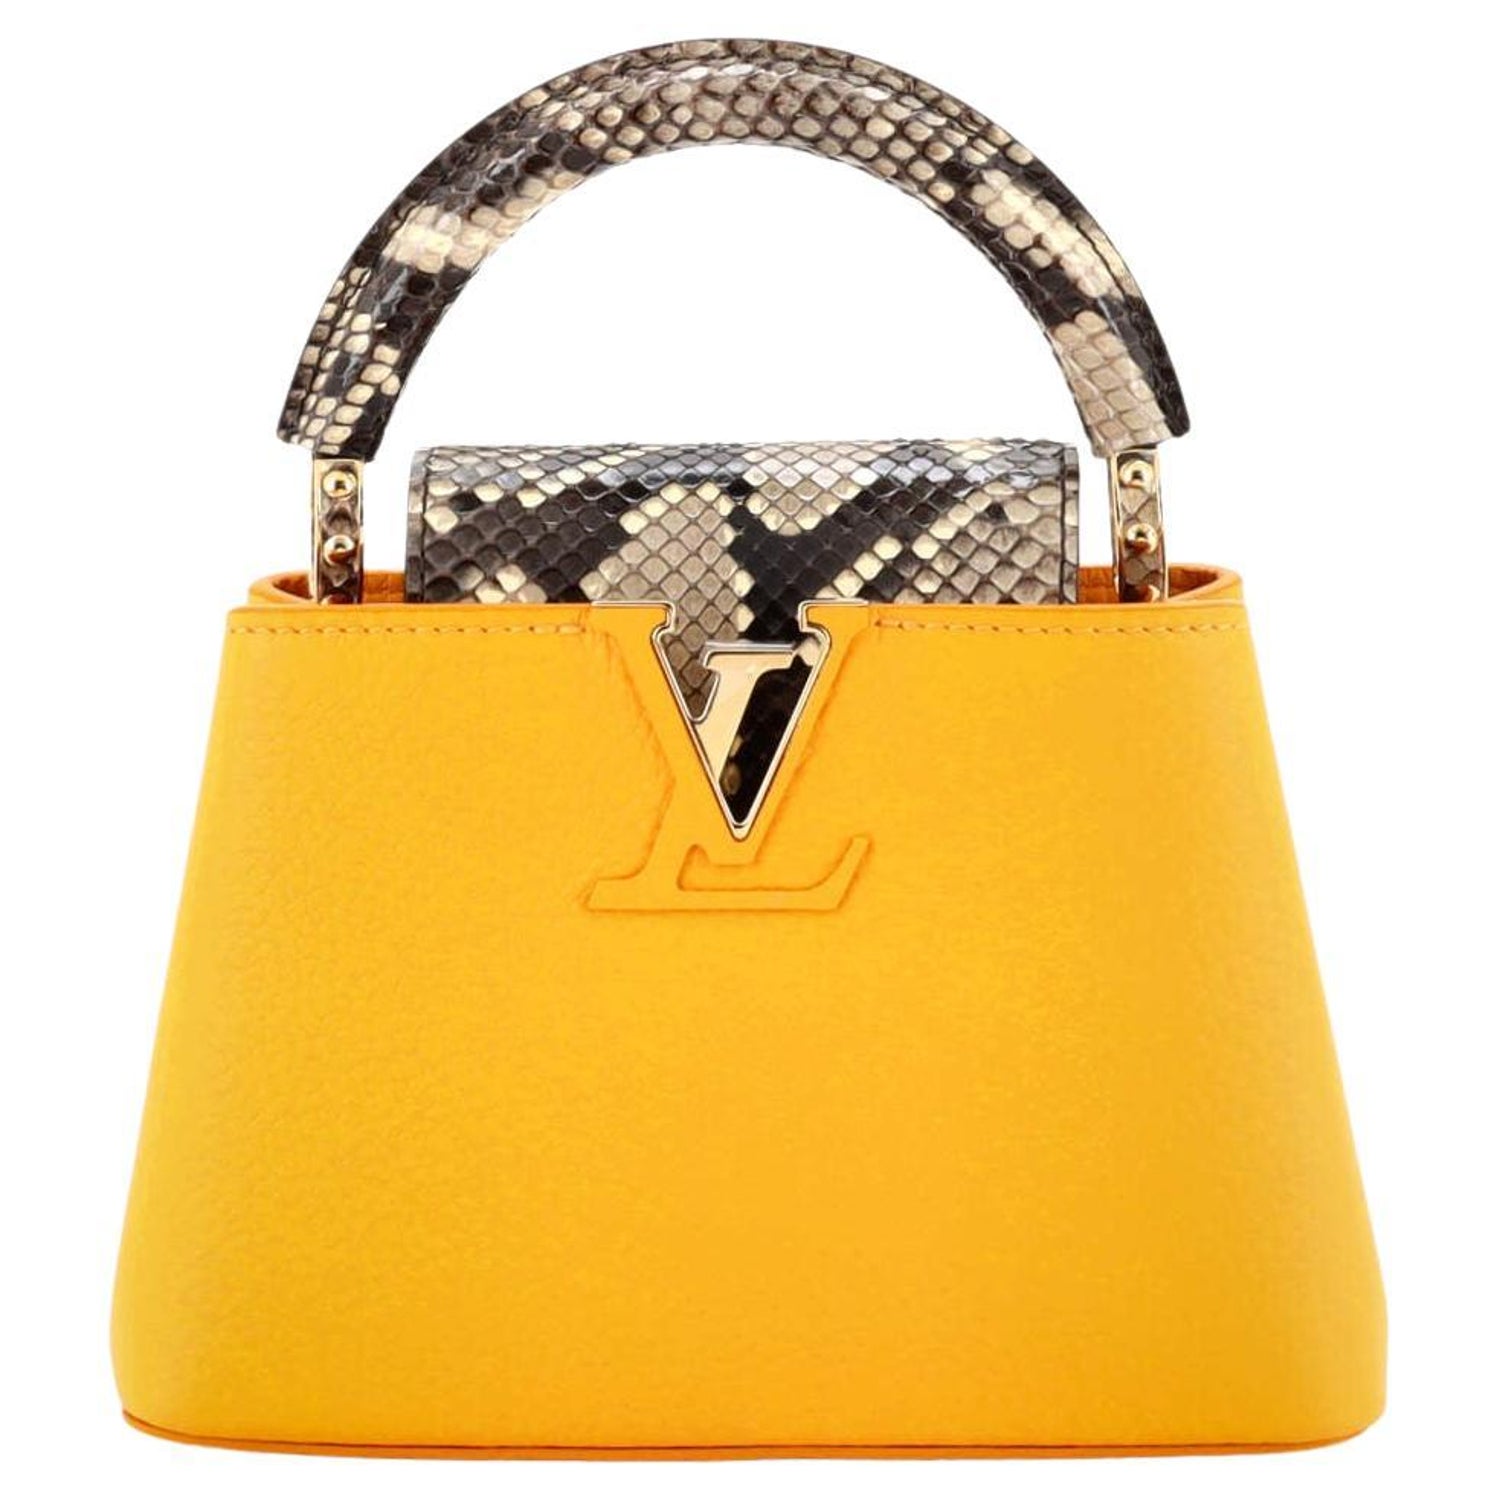 Louis Vuitton Limited Capucines BB Scrunchie Handle sky blue leather handbag